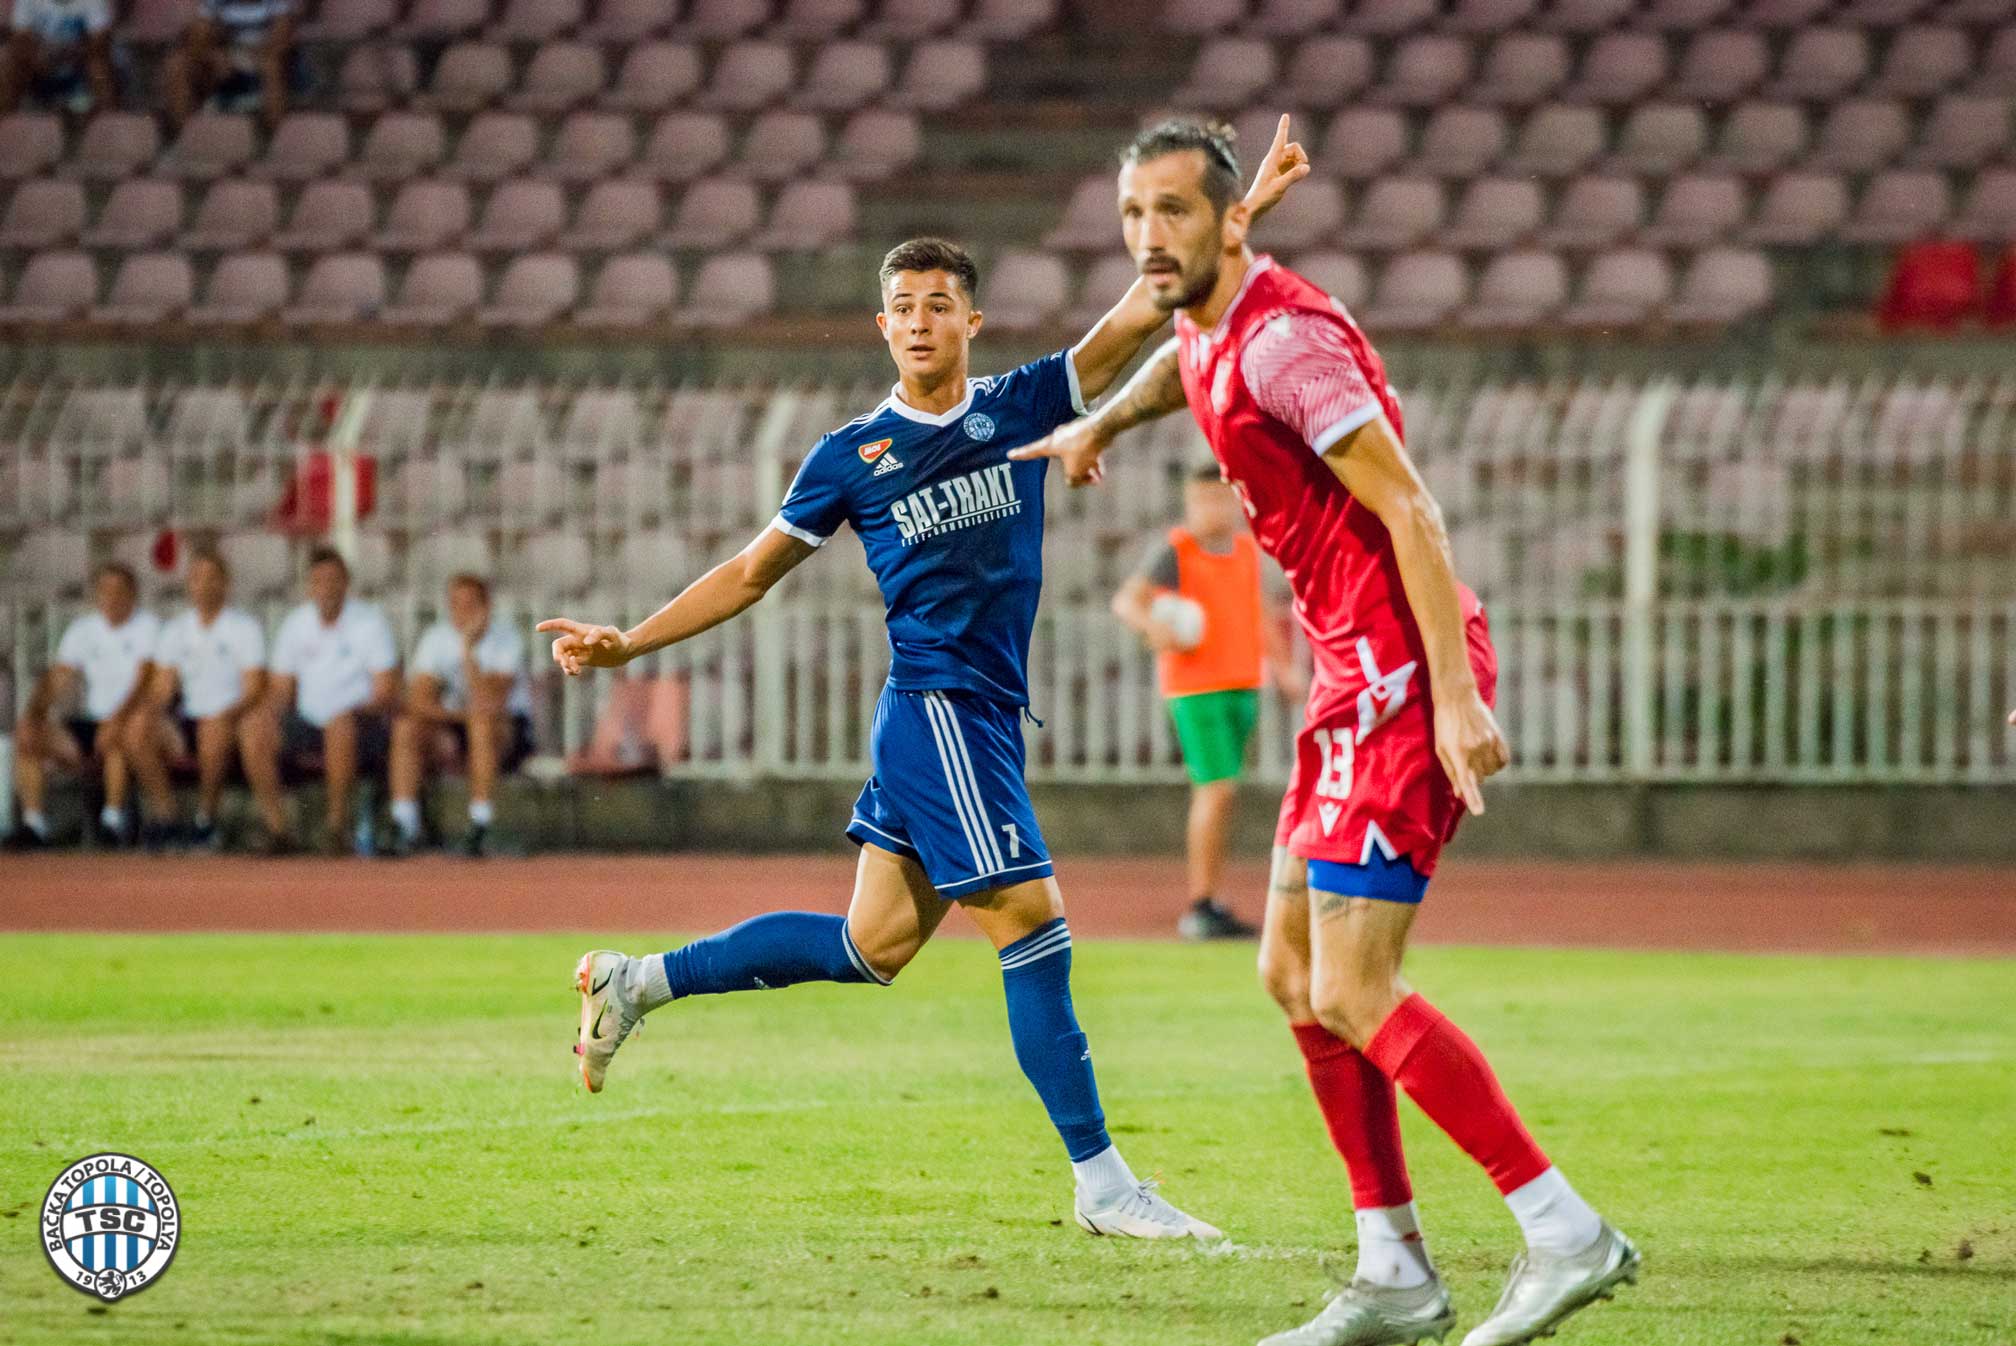 FK Radnički - FK TSC 1:2 (09.08.2021) Highlights 